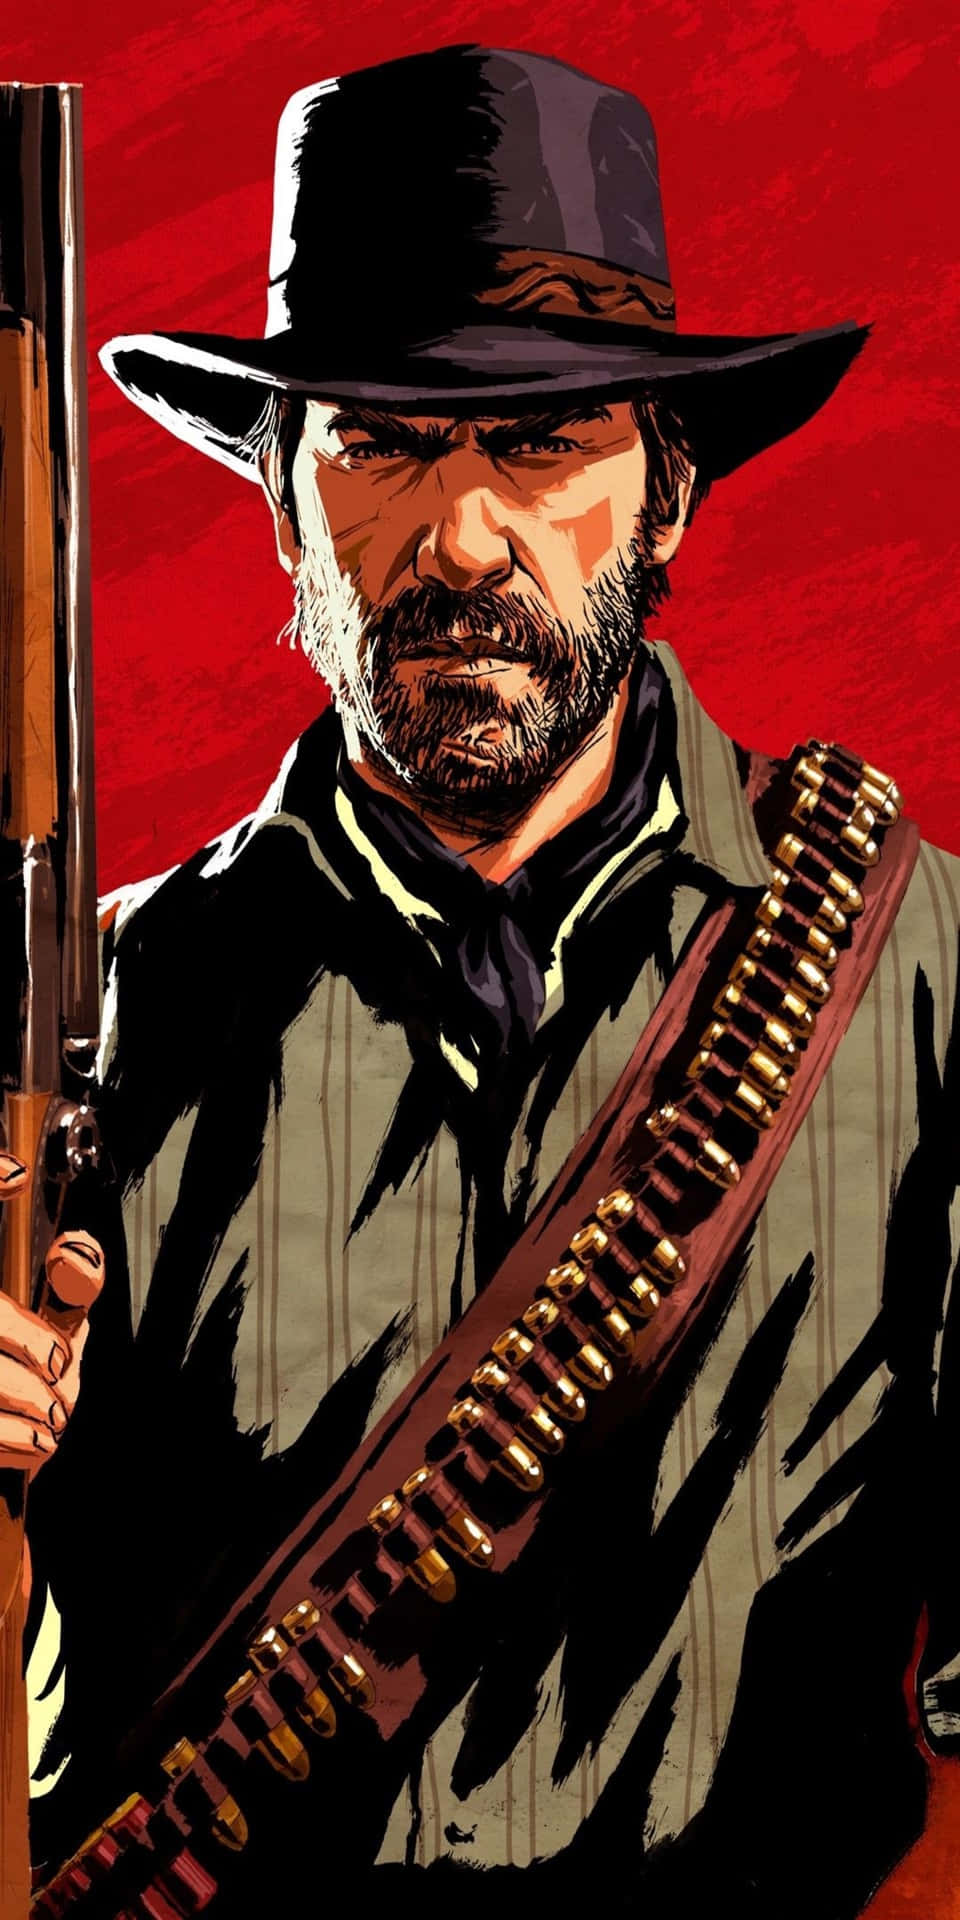 Fondode Pantalla De Pixel 3 Red Dead Redemption 2 Con Arthur Morgan Sosteniendo Una Escopeta.